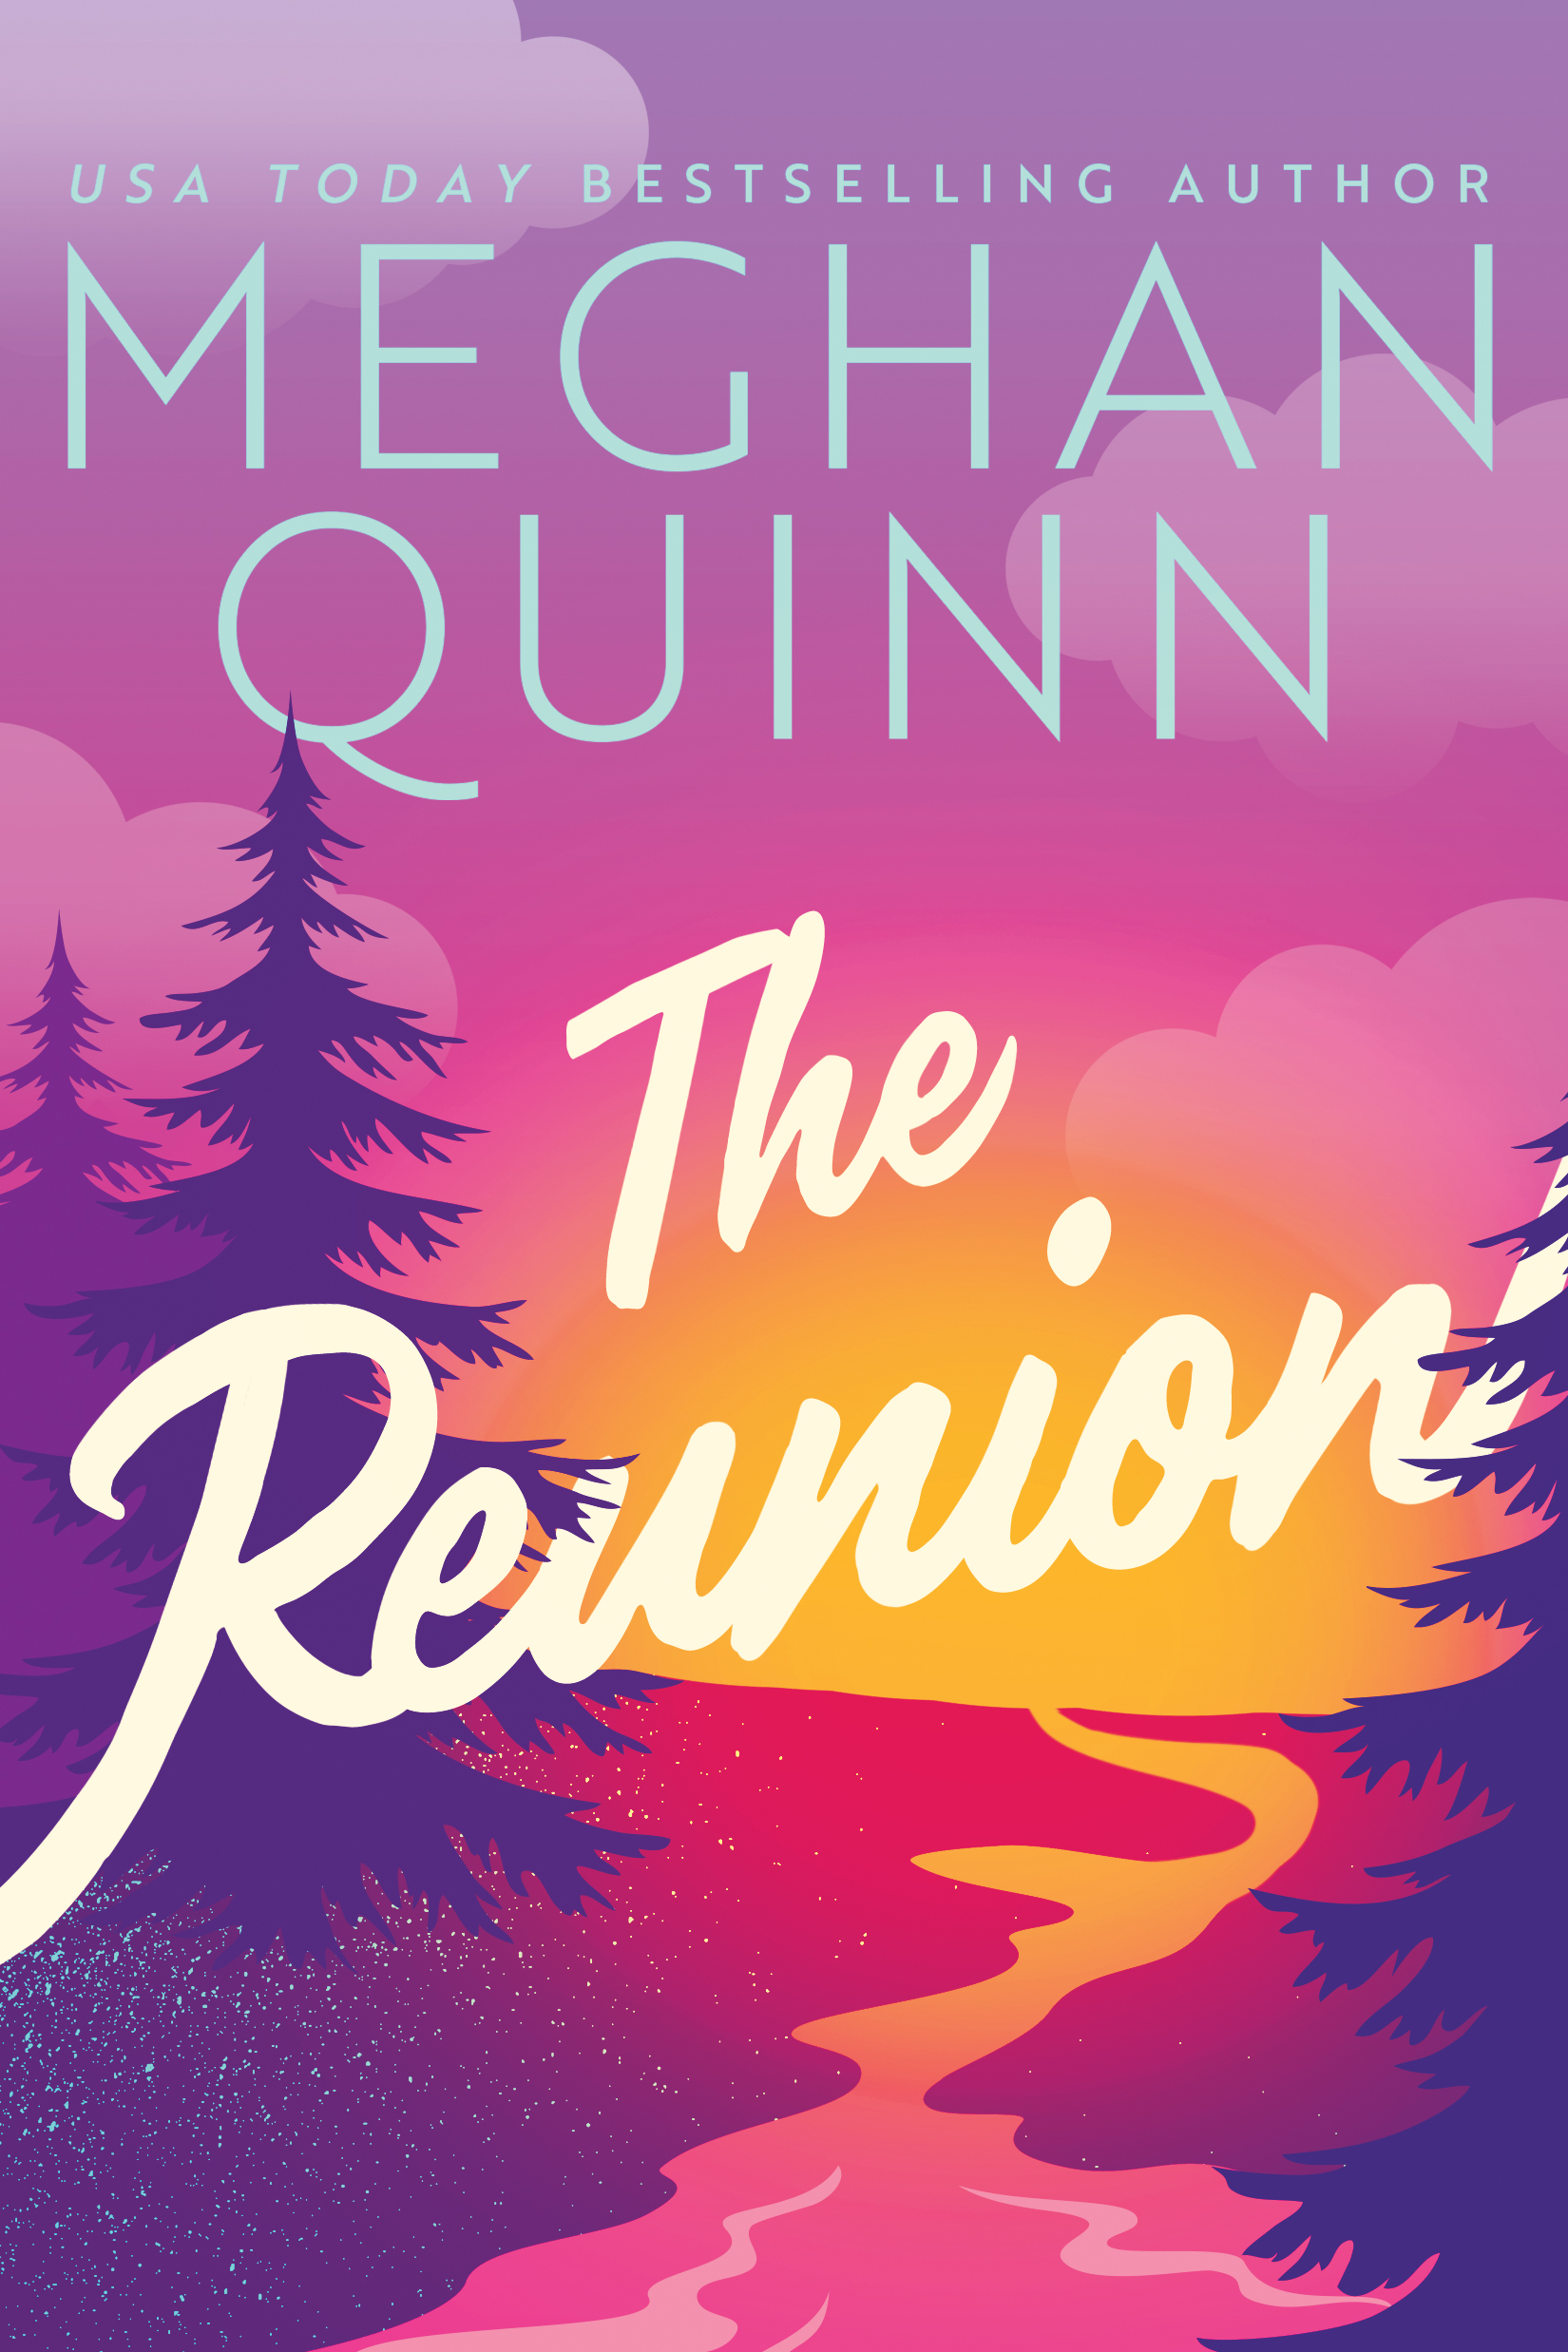 THE REUNION Cover – Meghan Quinn